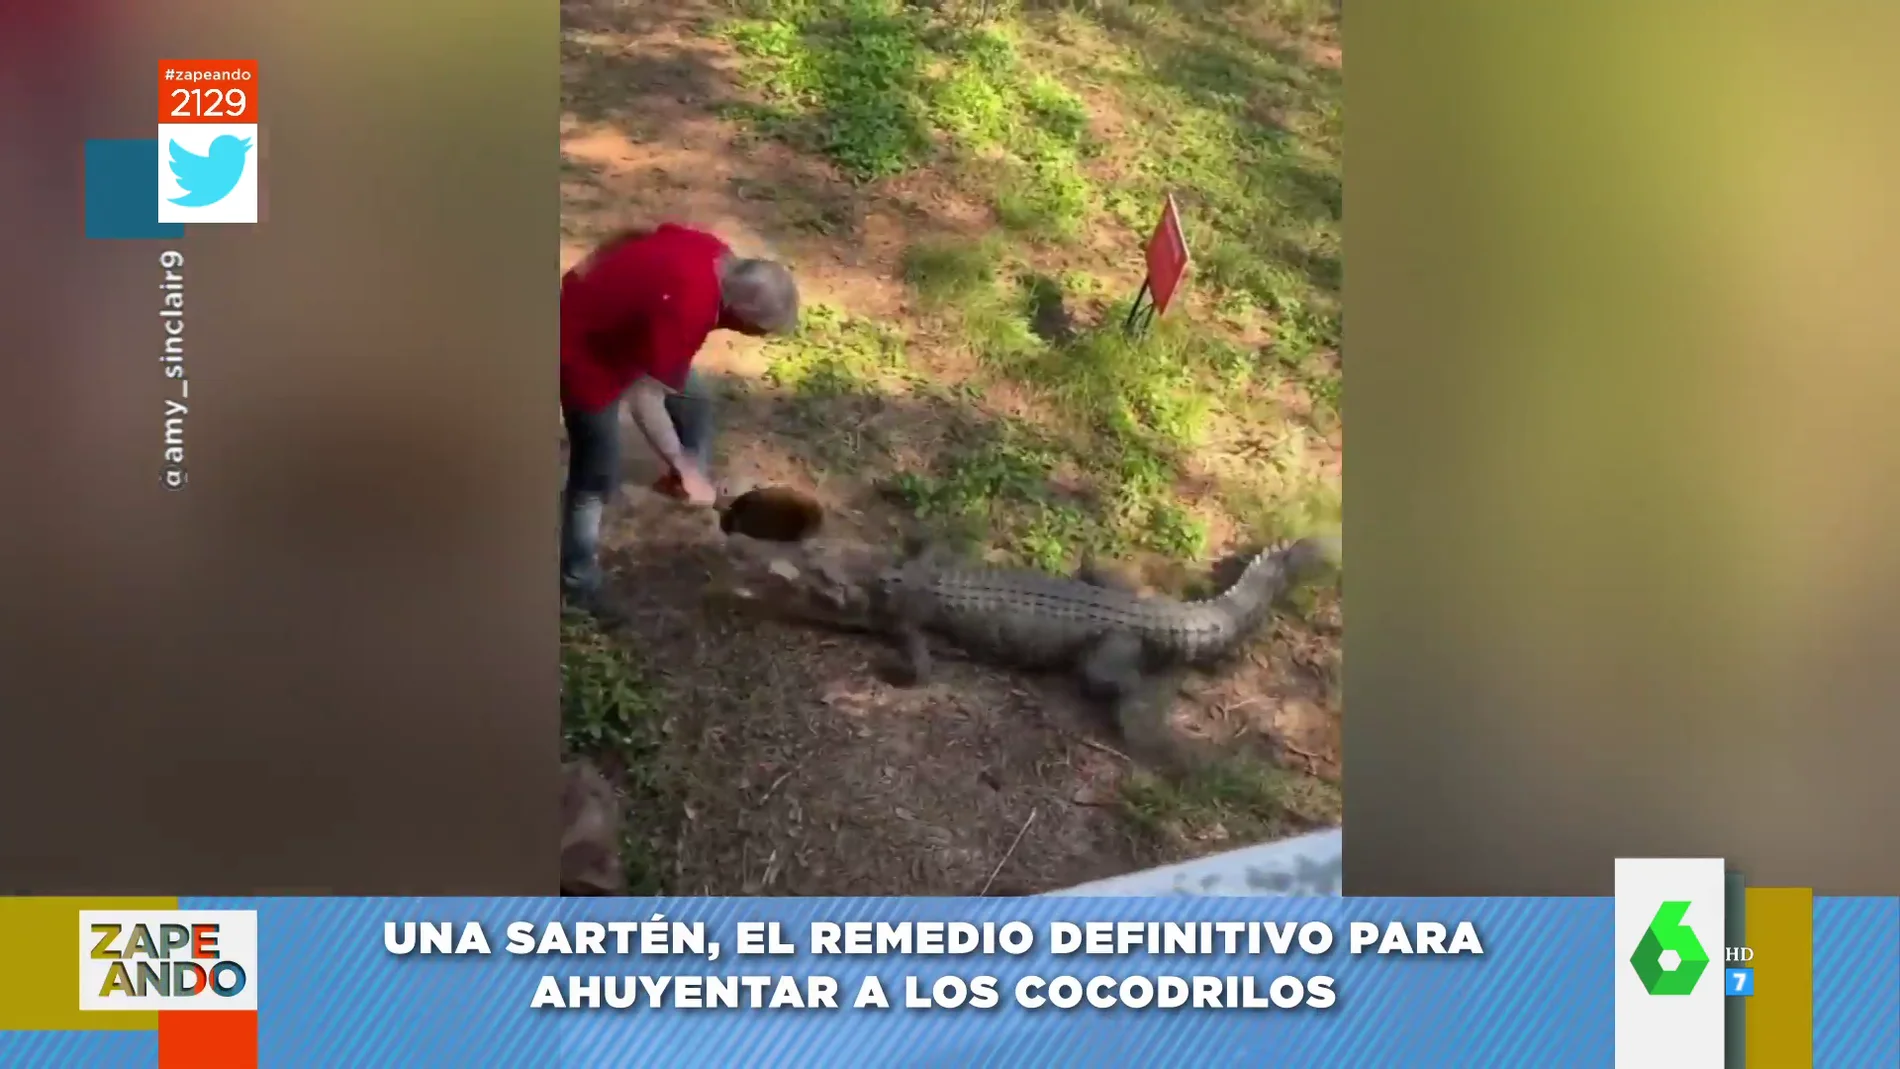 El sorprendente método de un hombre para ahuyentar a un cocodrilo:  